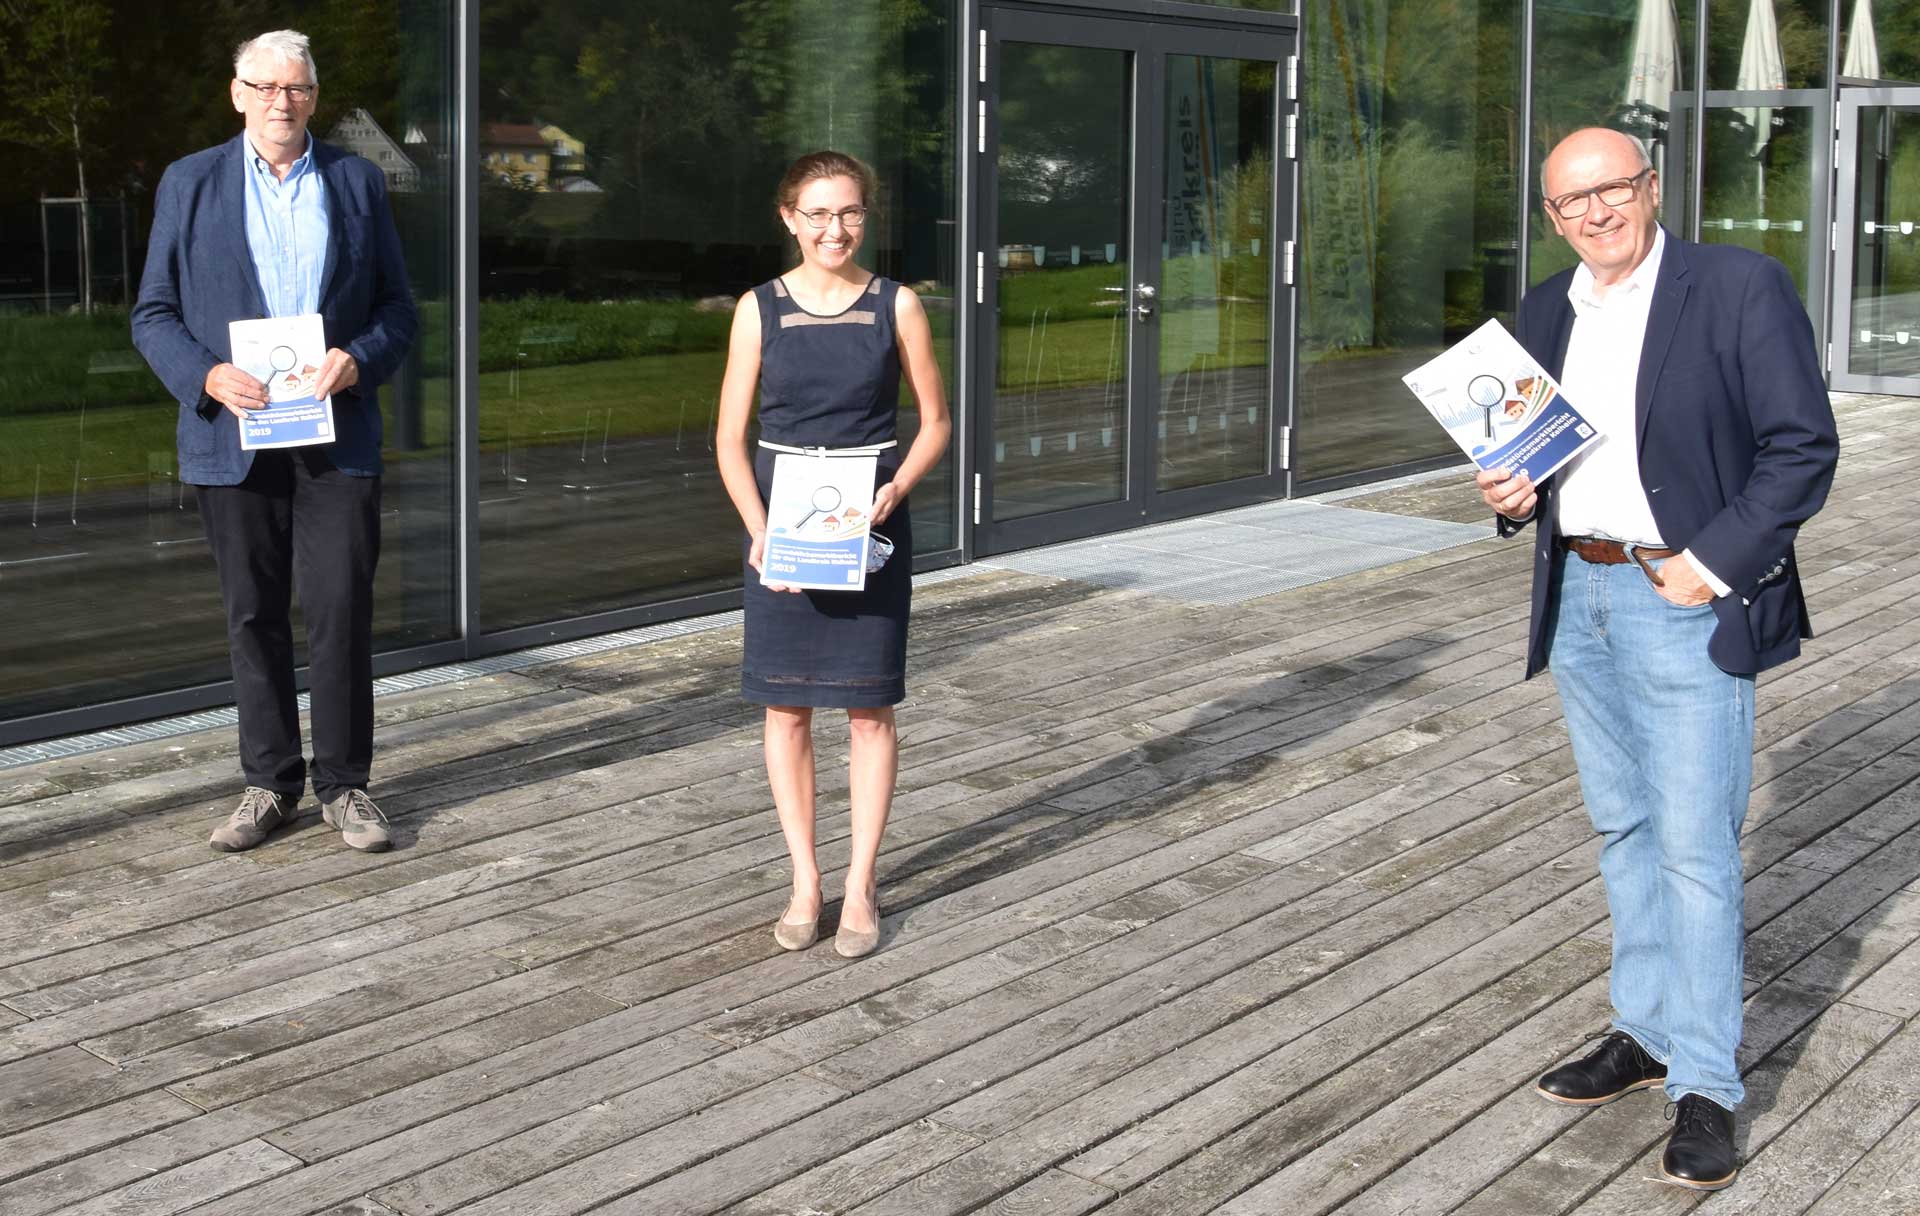 v.l.: Lorenz Schels, Elisabeth Schweizer und Landrat Martin Neumeyer präsentieren den Grundstücksmarktbericht für 2019 (Foto: Marcus Dörner/Landratsamt Kelheim)